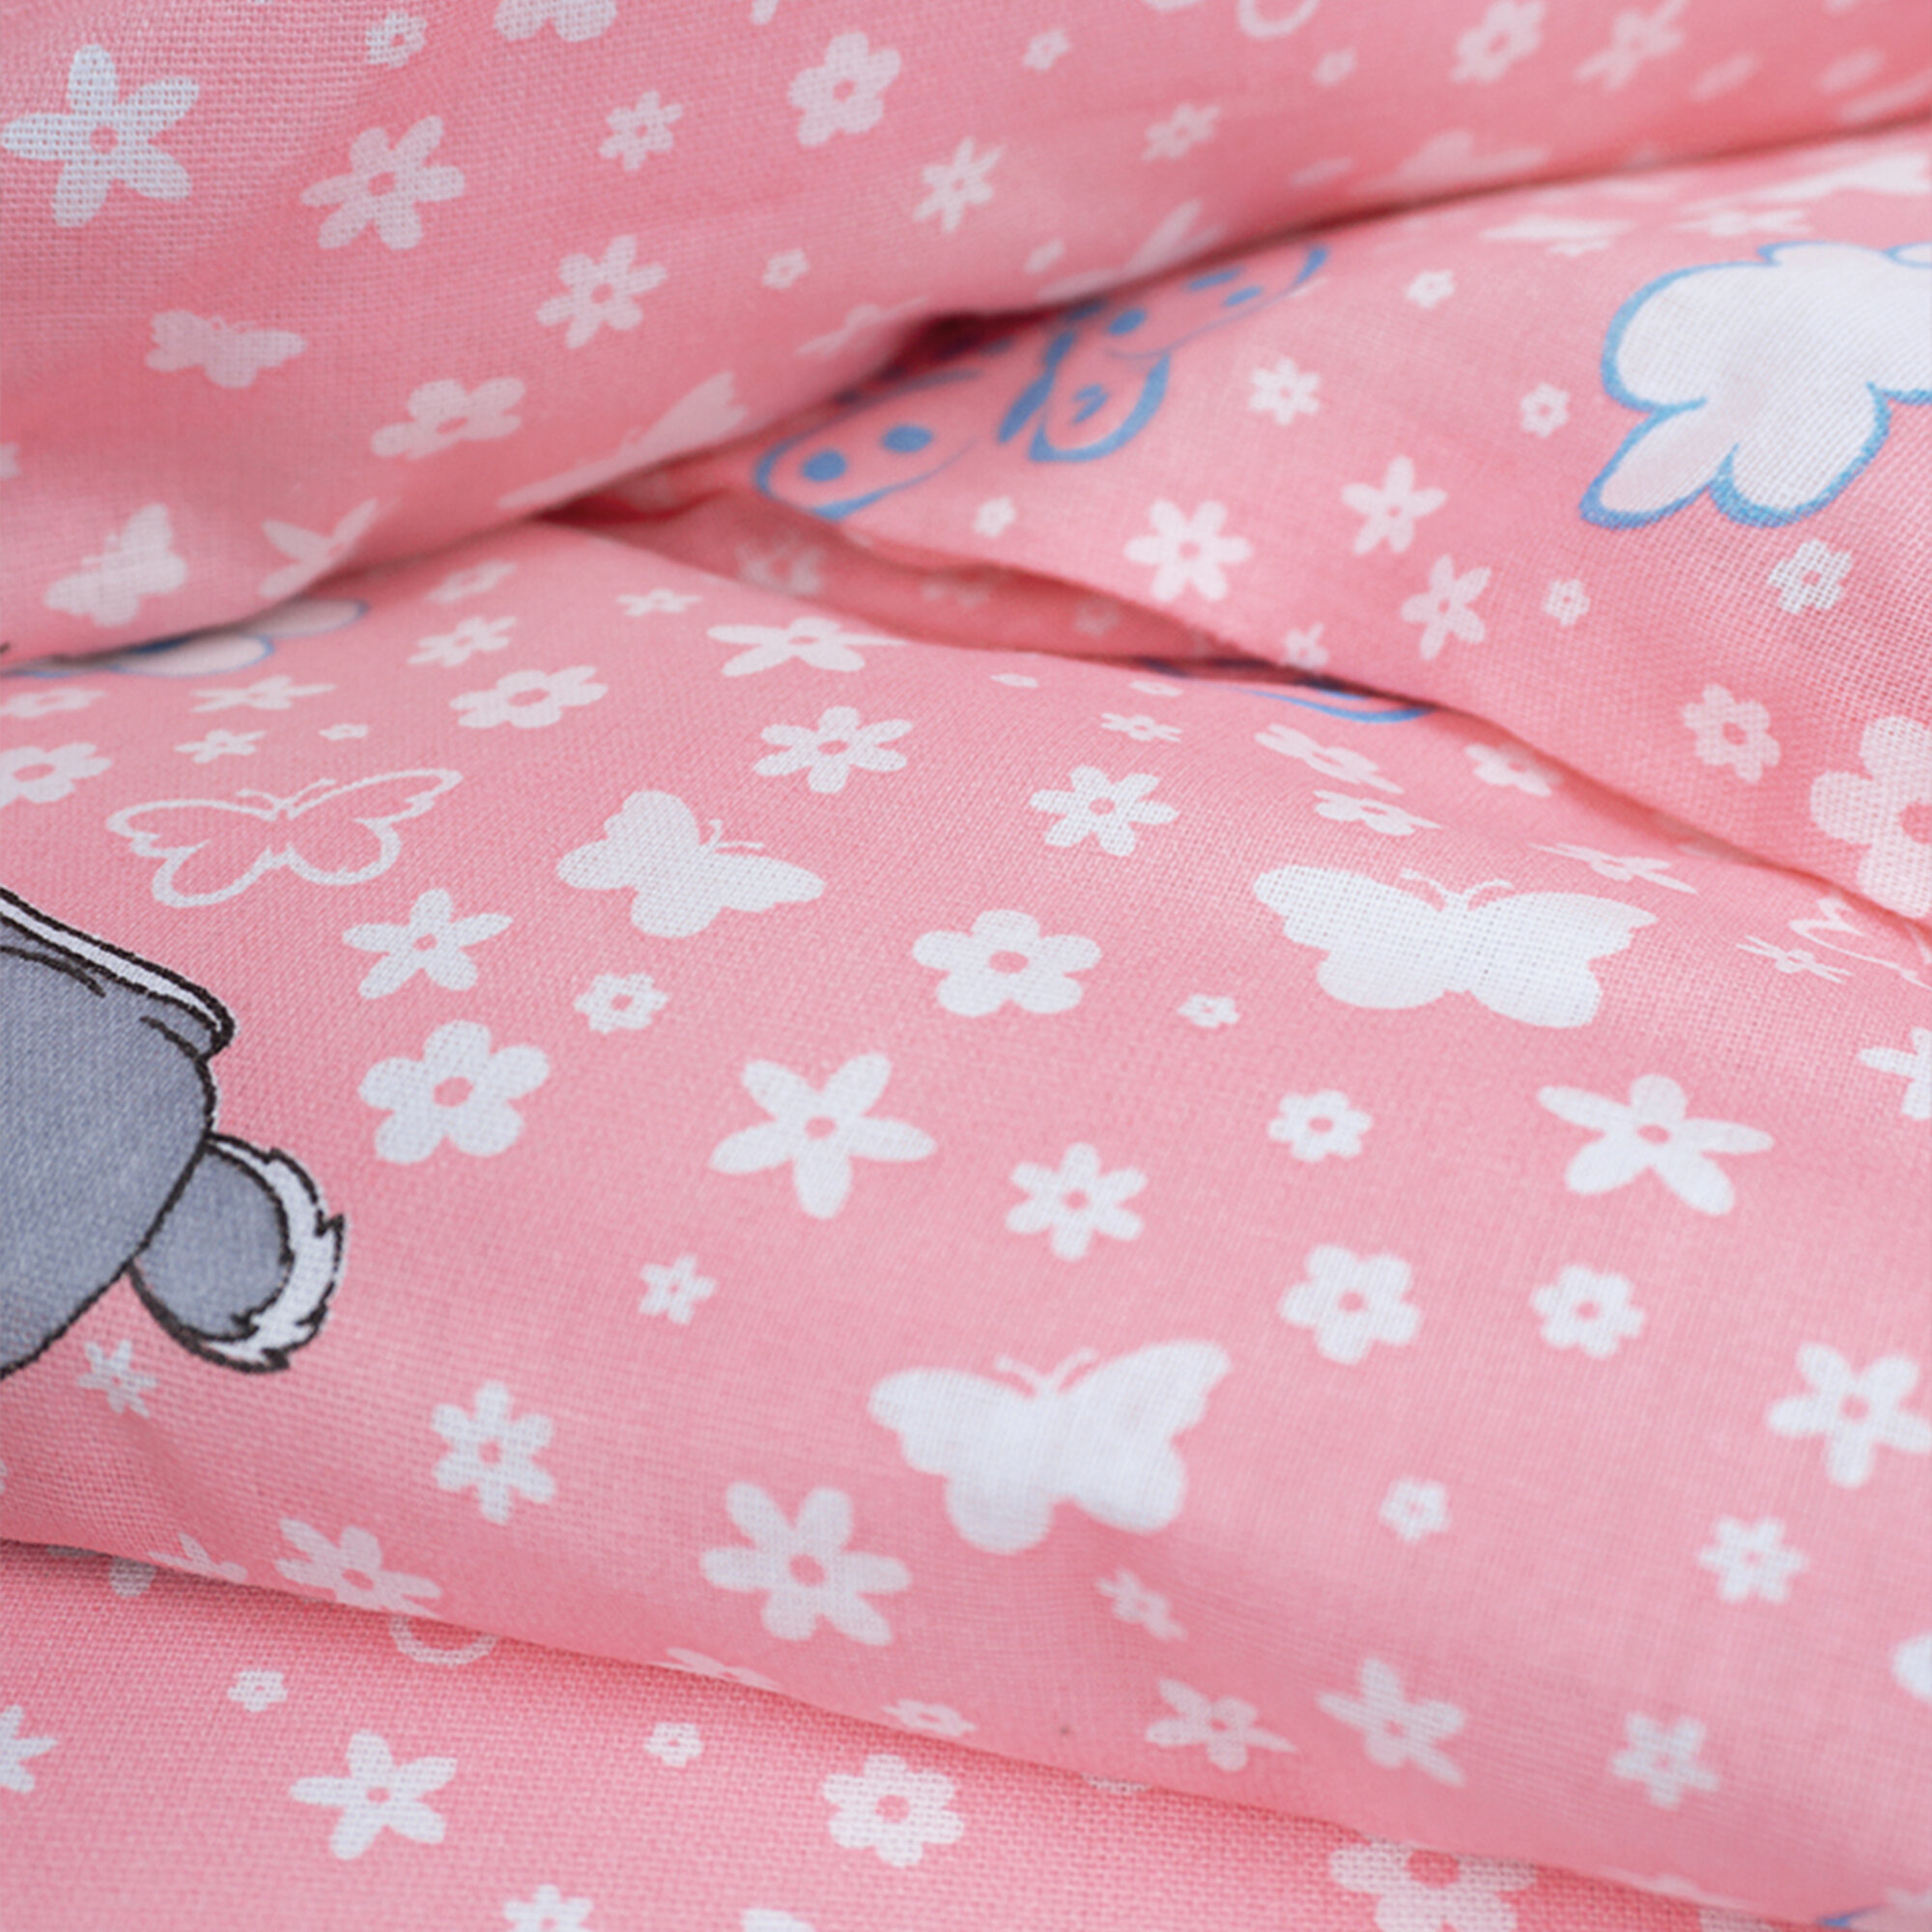 Комплект постельного белья Детский в кроватку Galtex Зайки серые бело-розовый